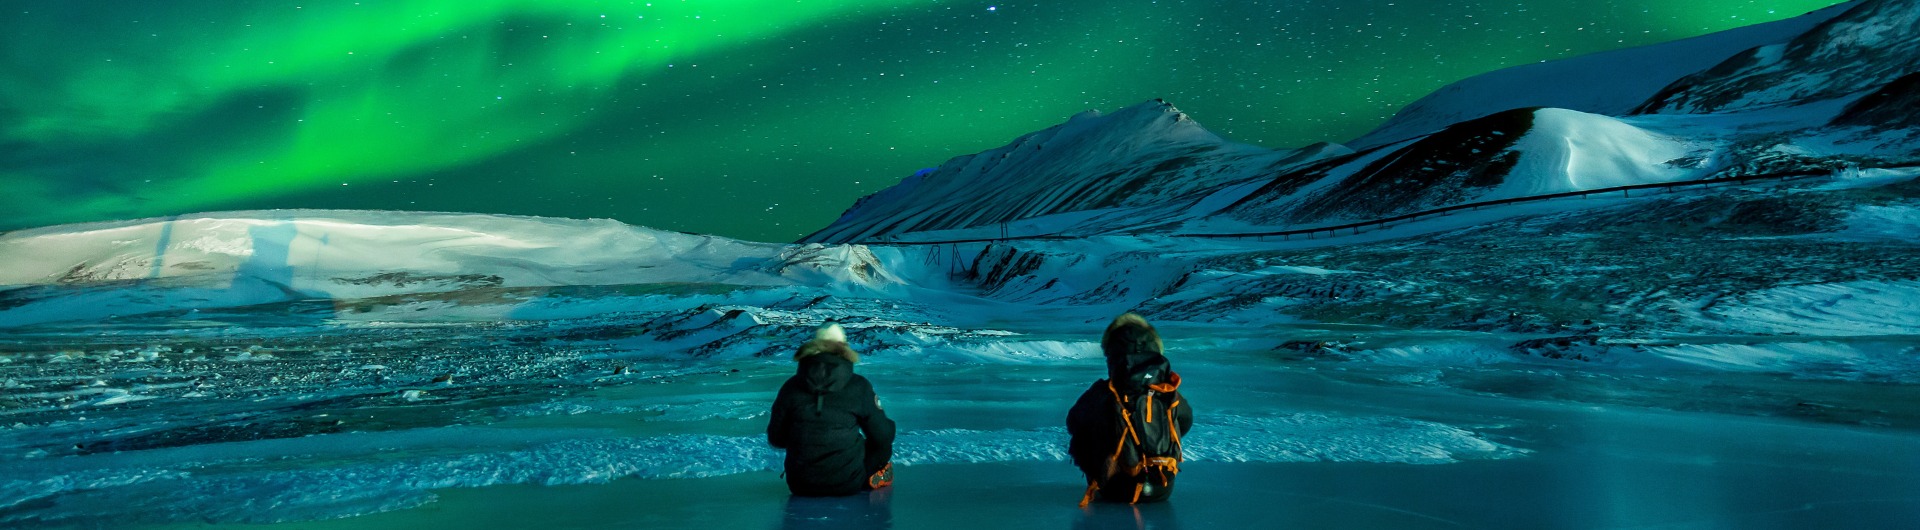 Alaska - dzikie piękno w poszukiwaniu zorzy polarnej